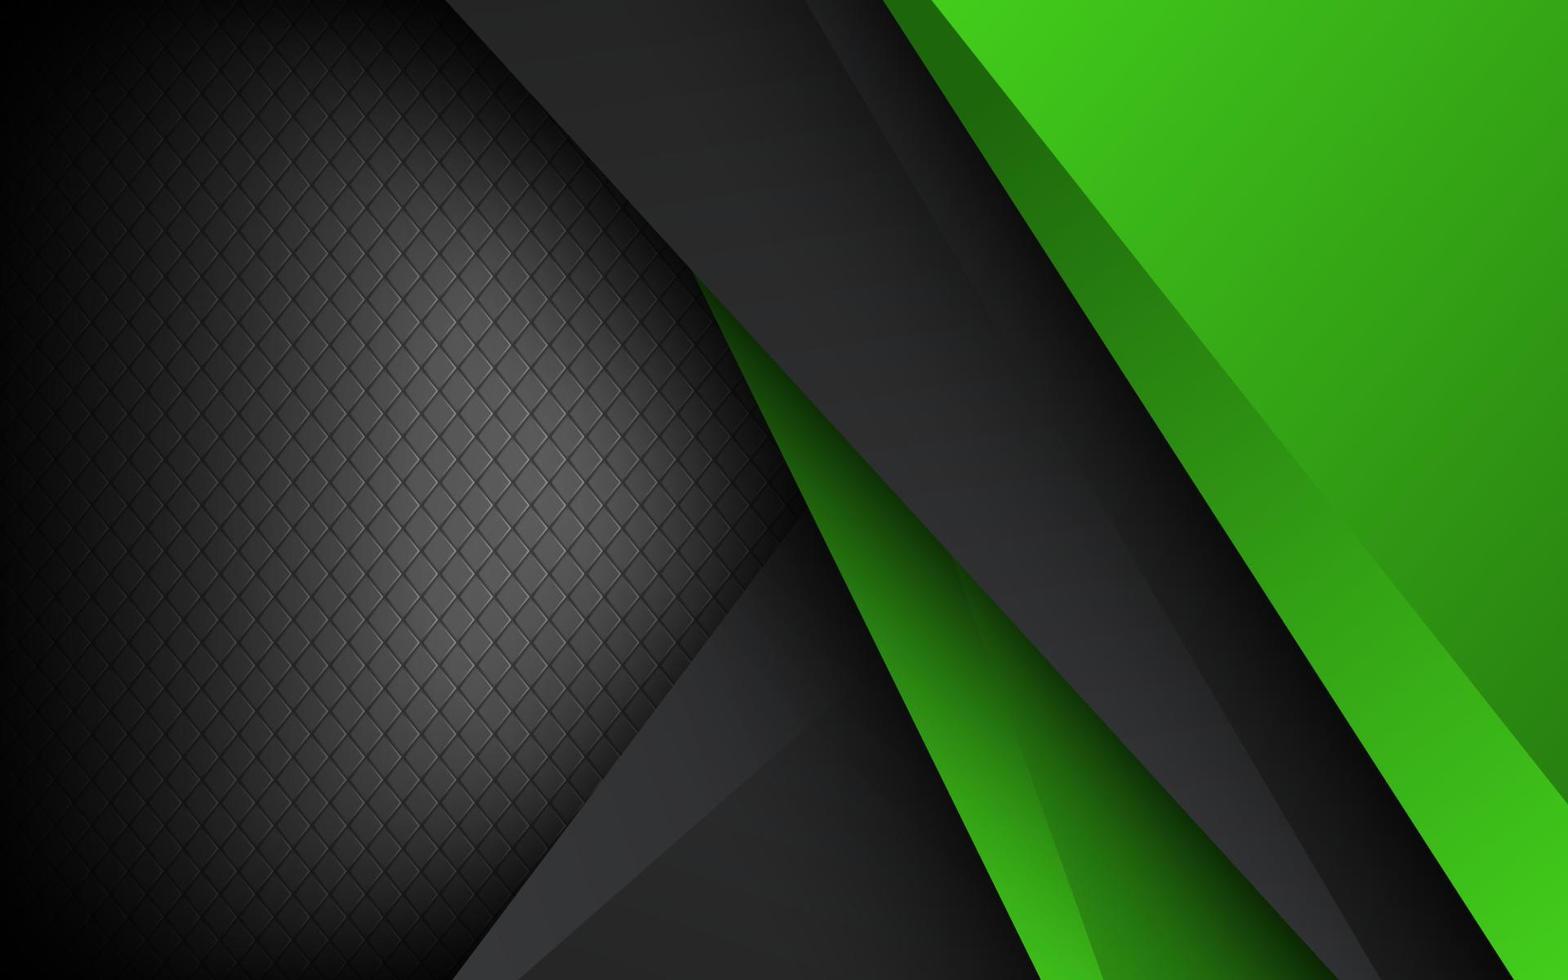 abstrakt 3d dunkel Grün grau Hintergrund mit ein Kombination von leuchtend Grün Überlappung Schichten Hintergrund vektor